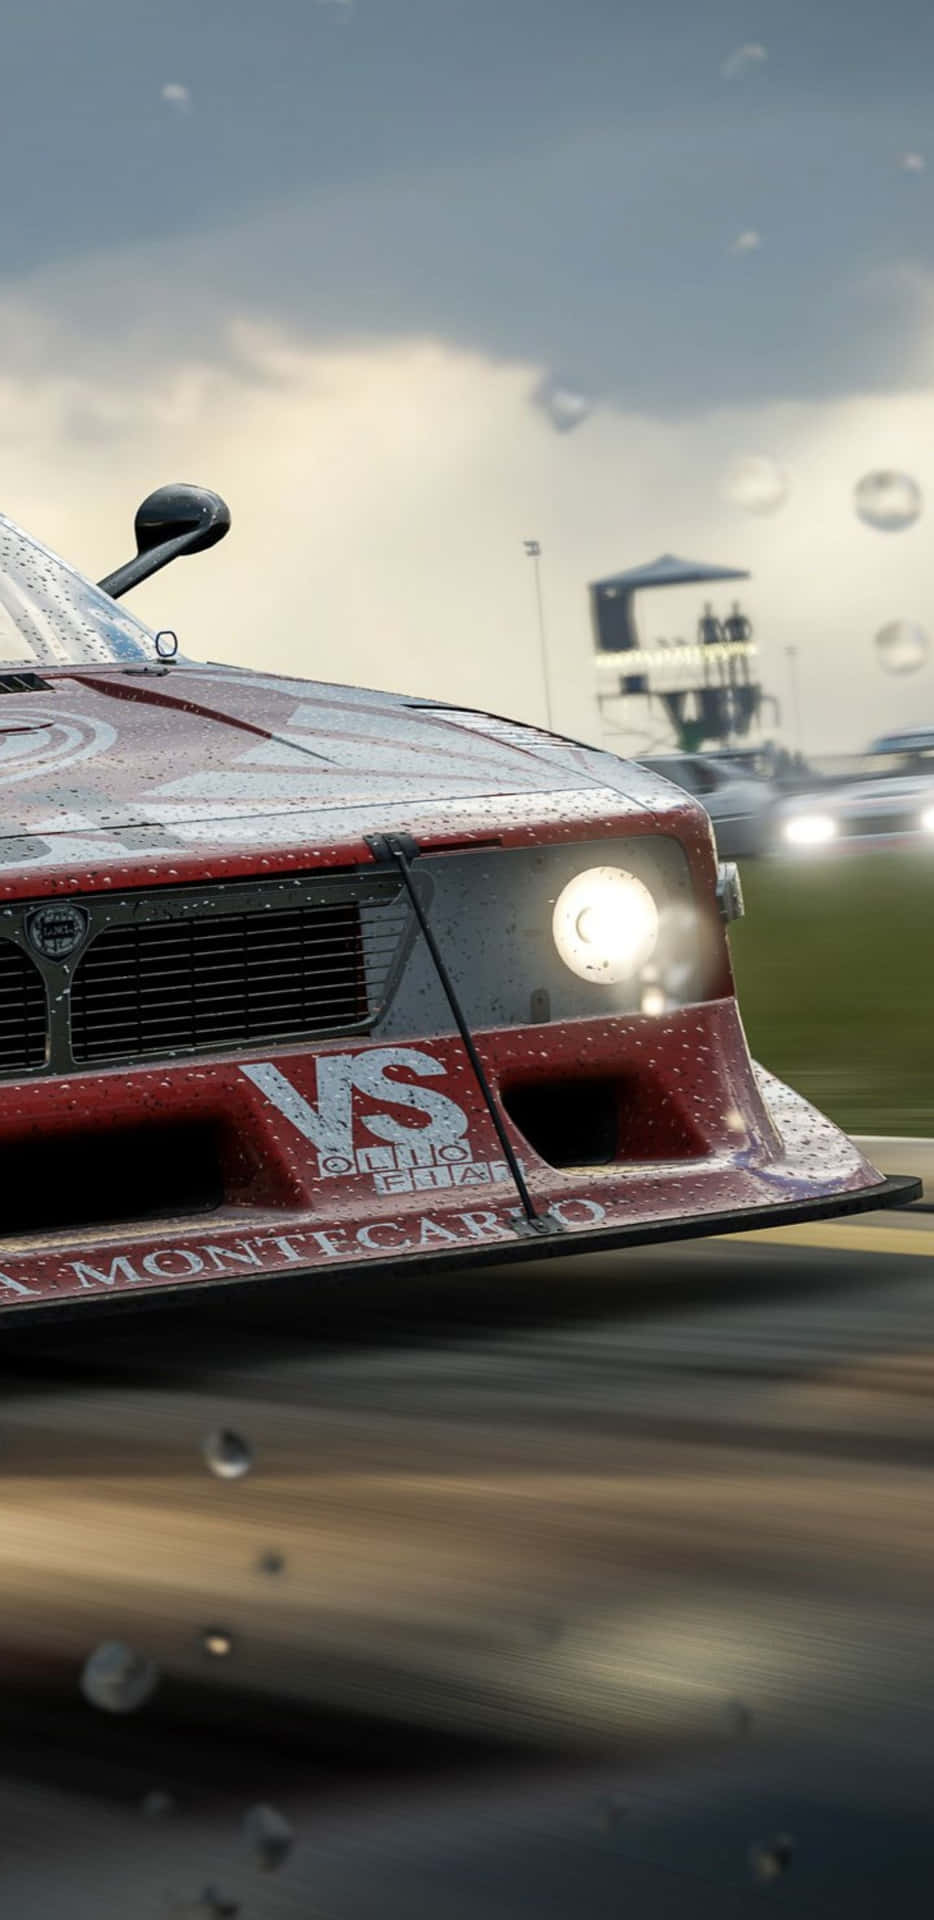 Sumérgeteen La Acción De Carreras De Forza Motorsport 7 En El Google Pixel 3xl